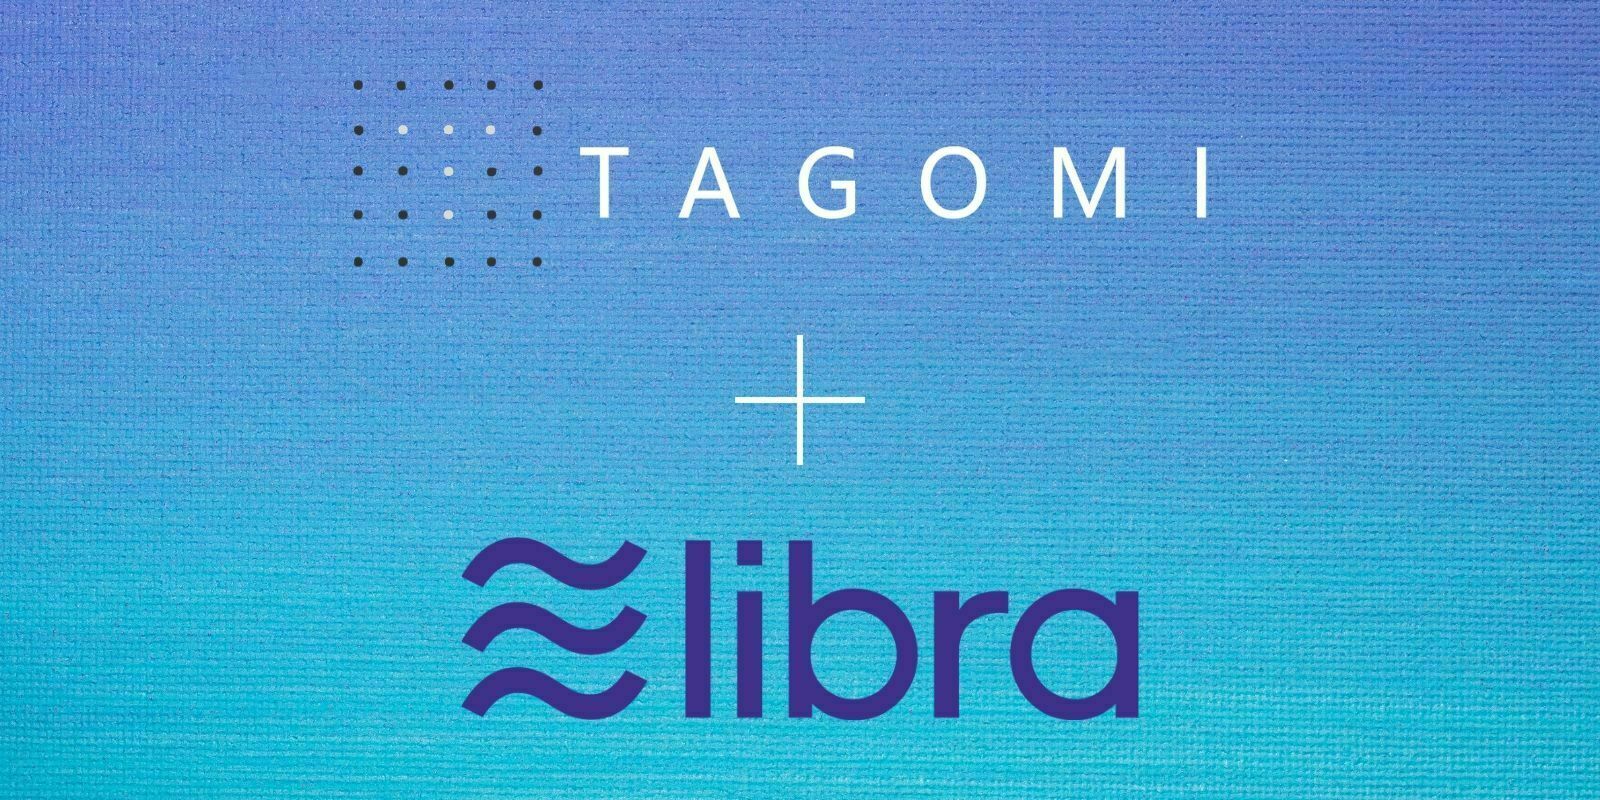 Le crypto-courtier Tagomi rejoint l'Association Libra